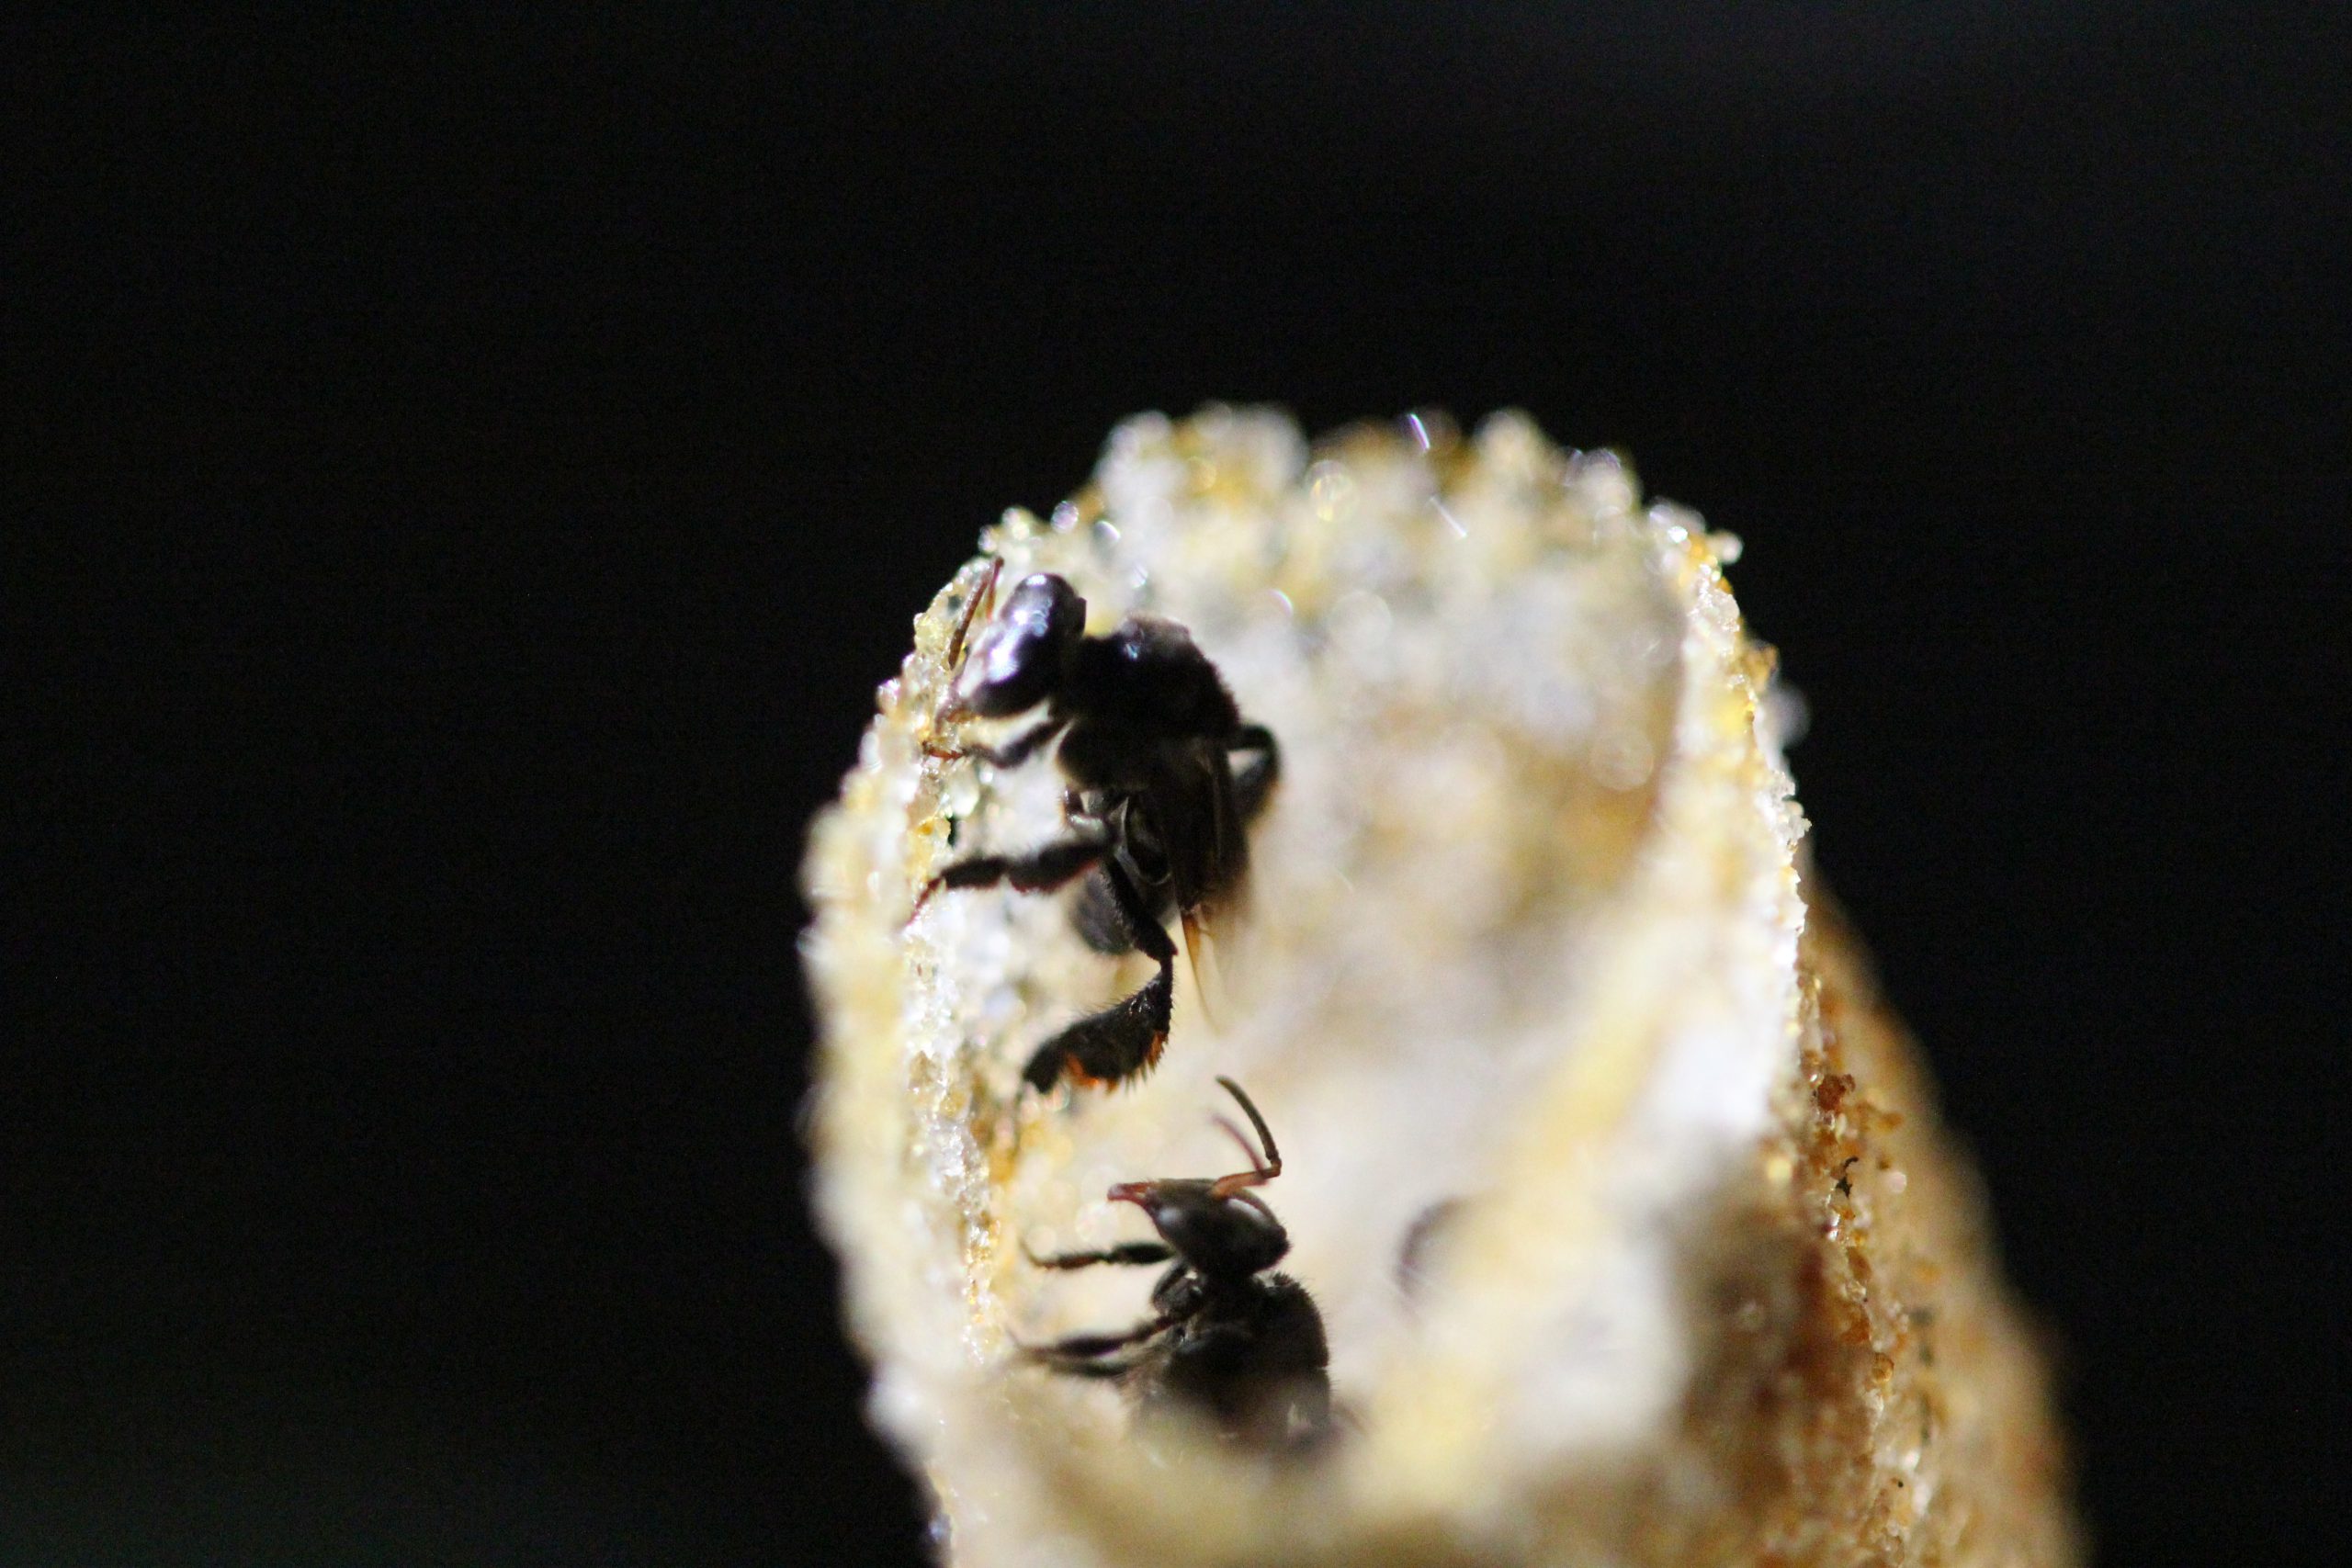 ชันโรง (Stingless Bee)